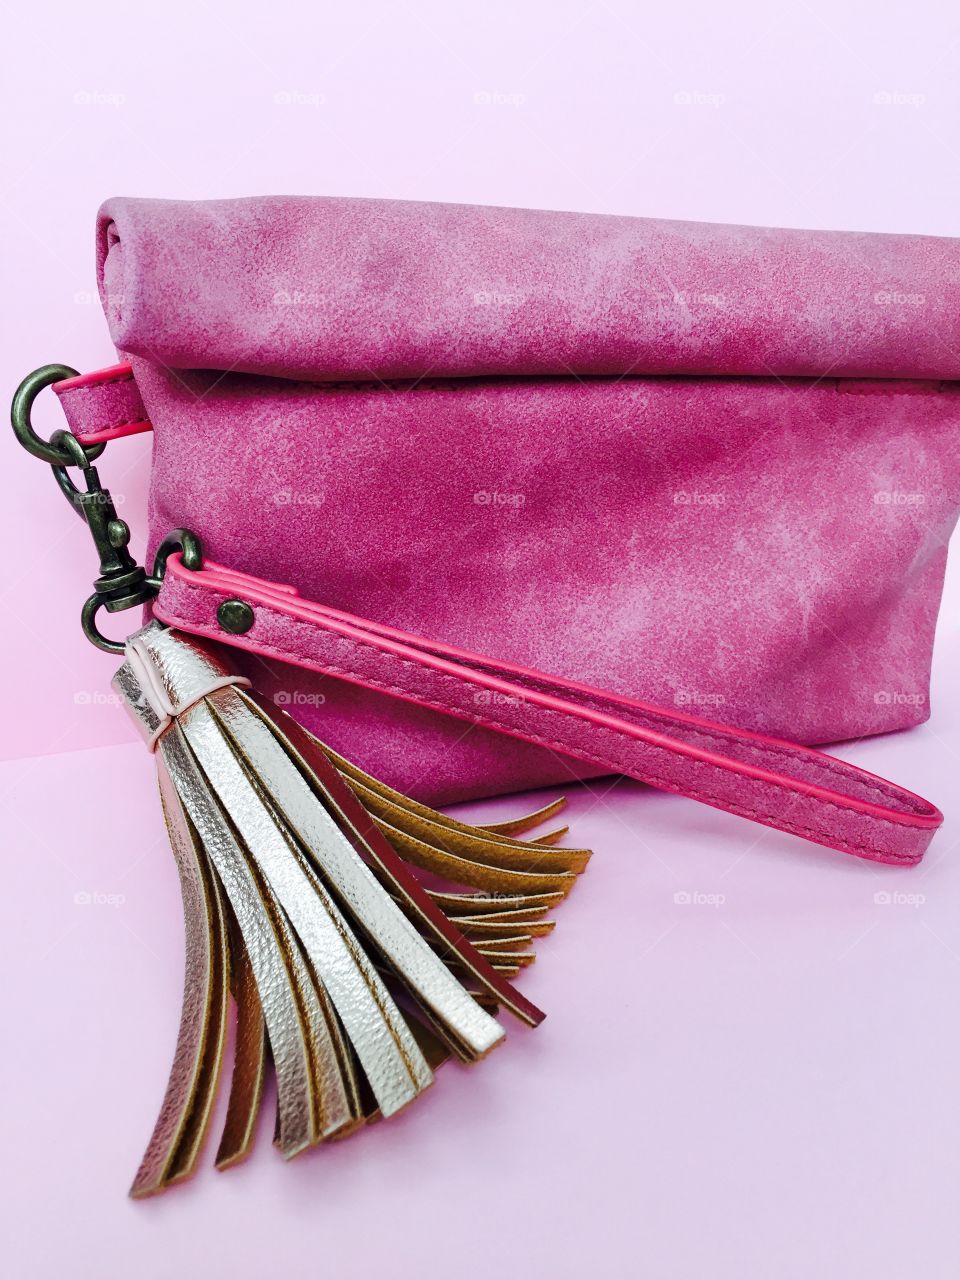 Studio shot of pink suede bag